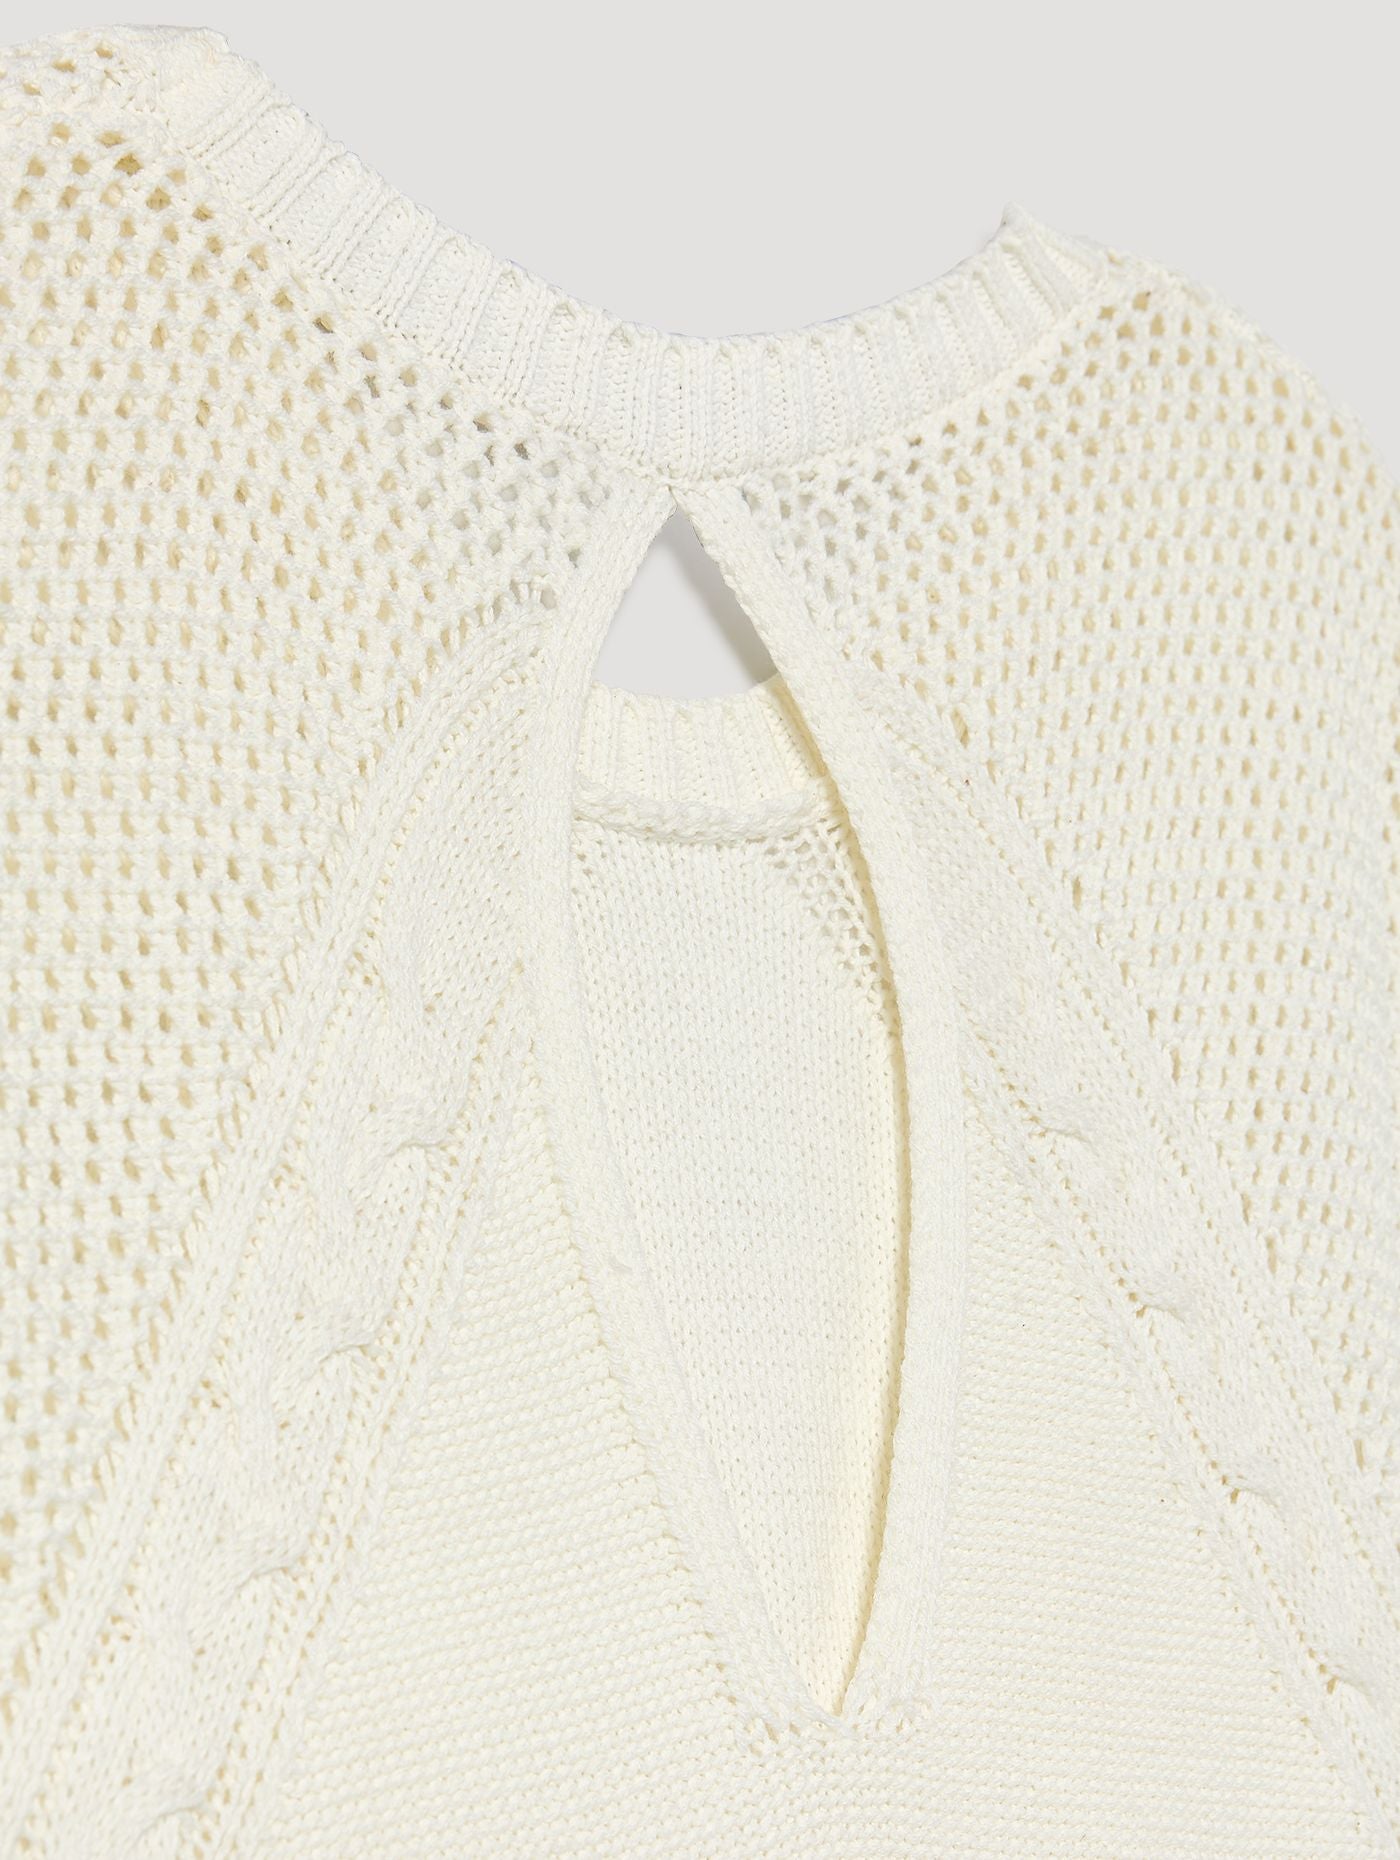 SkatÏe Crochet Detail White Sleeveless Knitted Vest Top